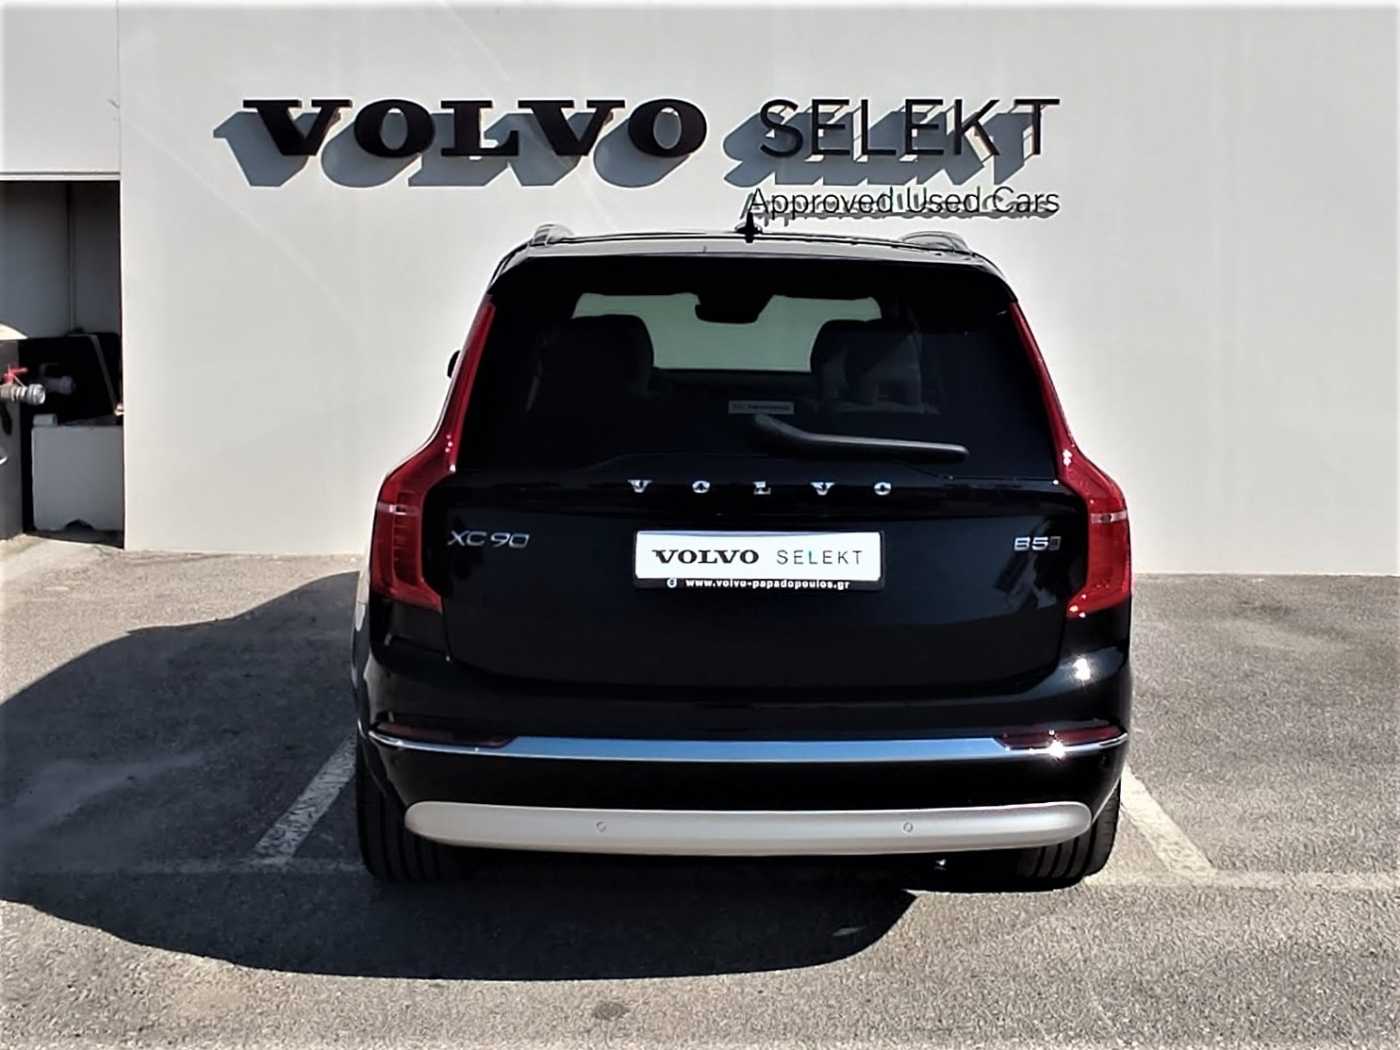 Volvo  Inscription, B5 AWD mild hybrid, Επτά ανεξάρτητα καθίσματα